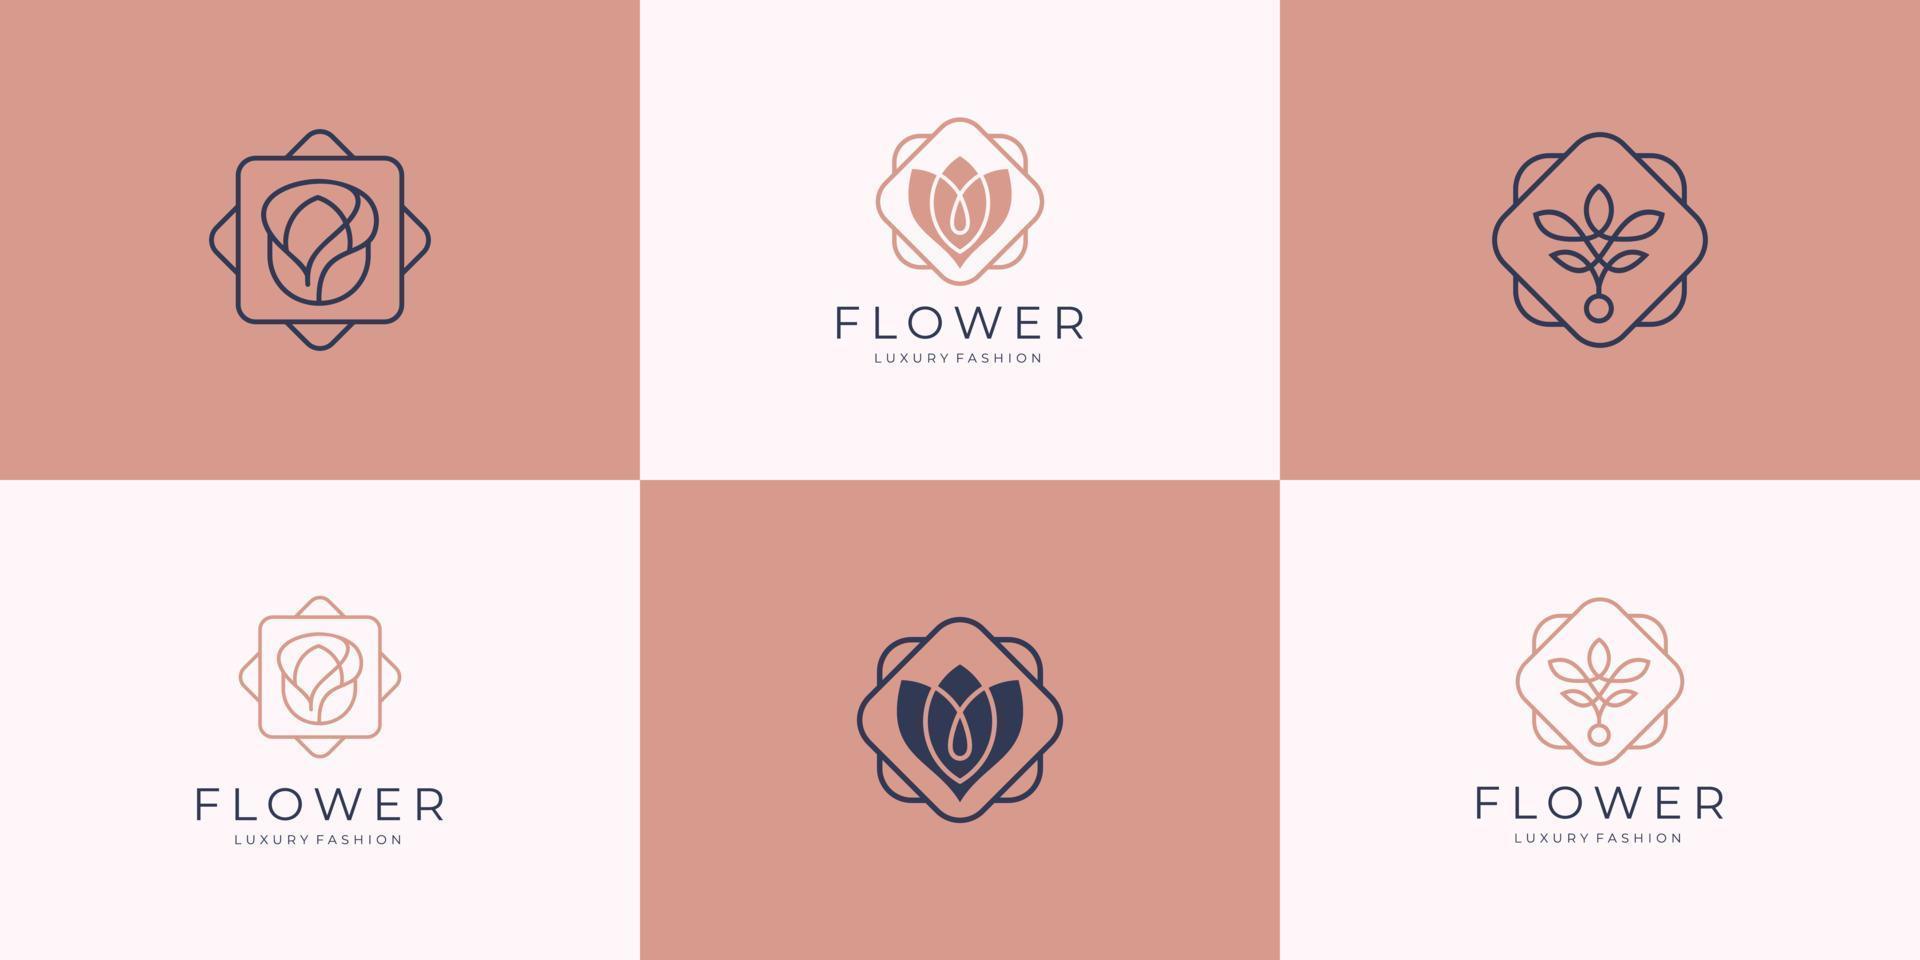 minimalista elegante flor rosa salón de belleza de lujo, moda, cuidado de la piel, cosmética, productos de yoga y spa plantillas de logotipo vector premium